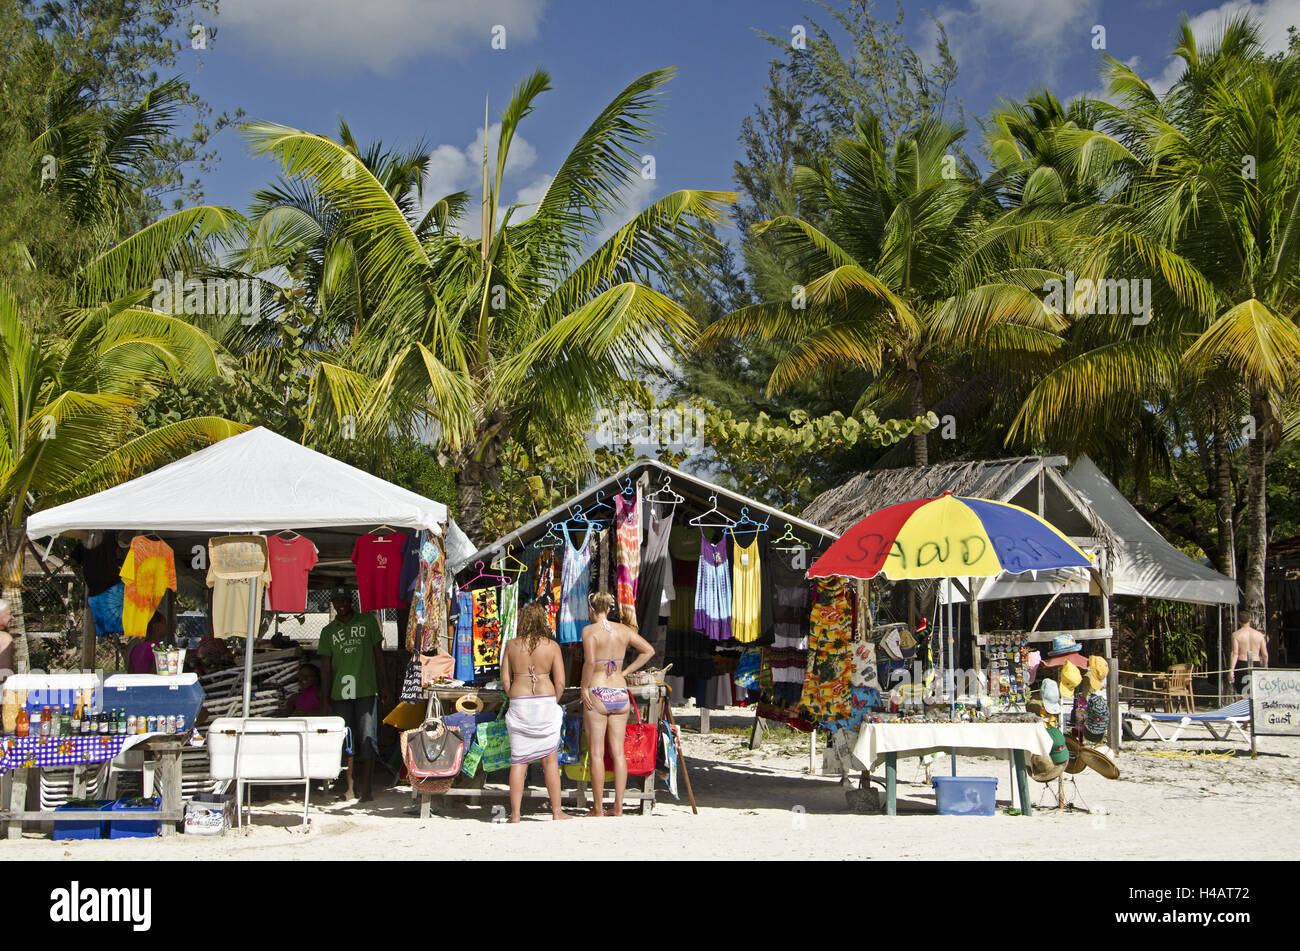 Antigua, stand de ventas en 'Jolly Beach", Foto de stock